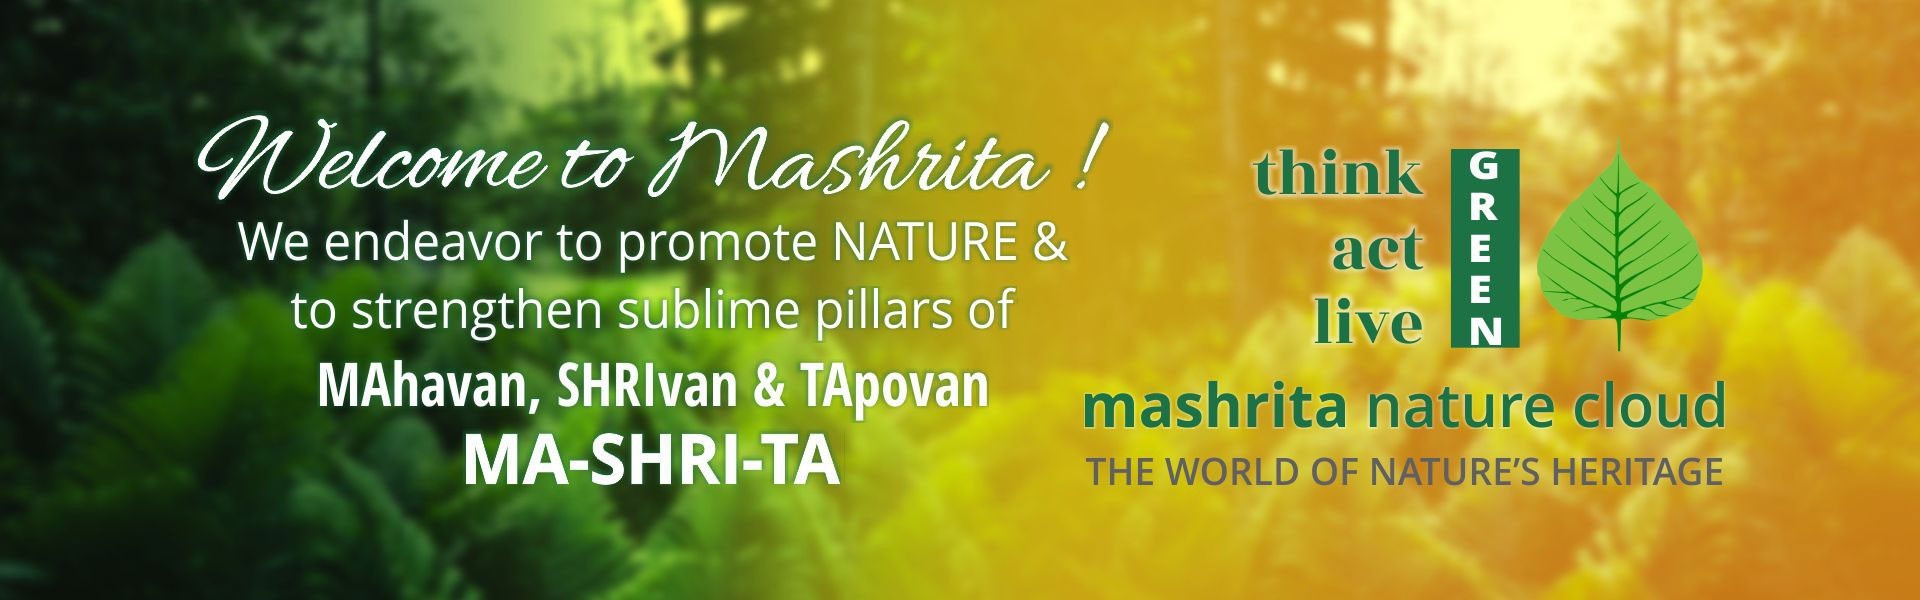 About Mashrita.com